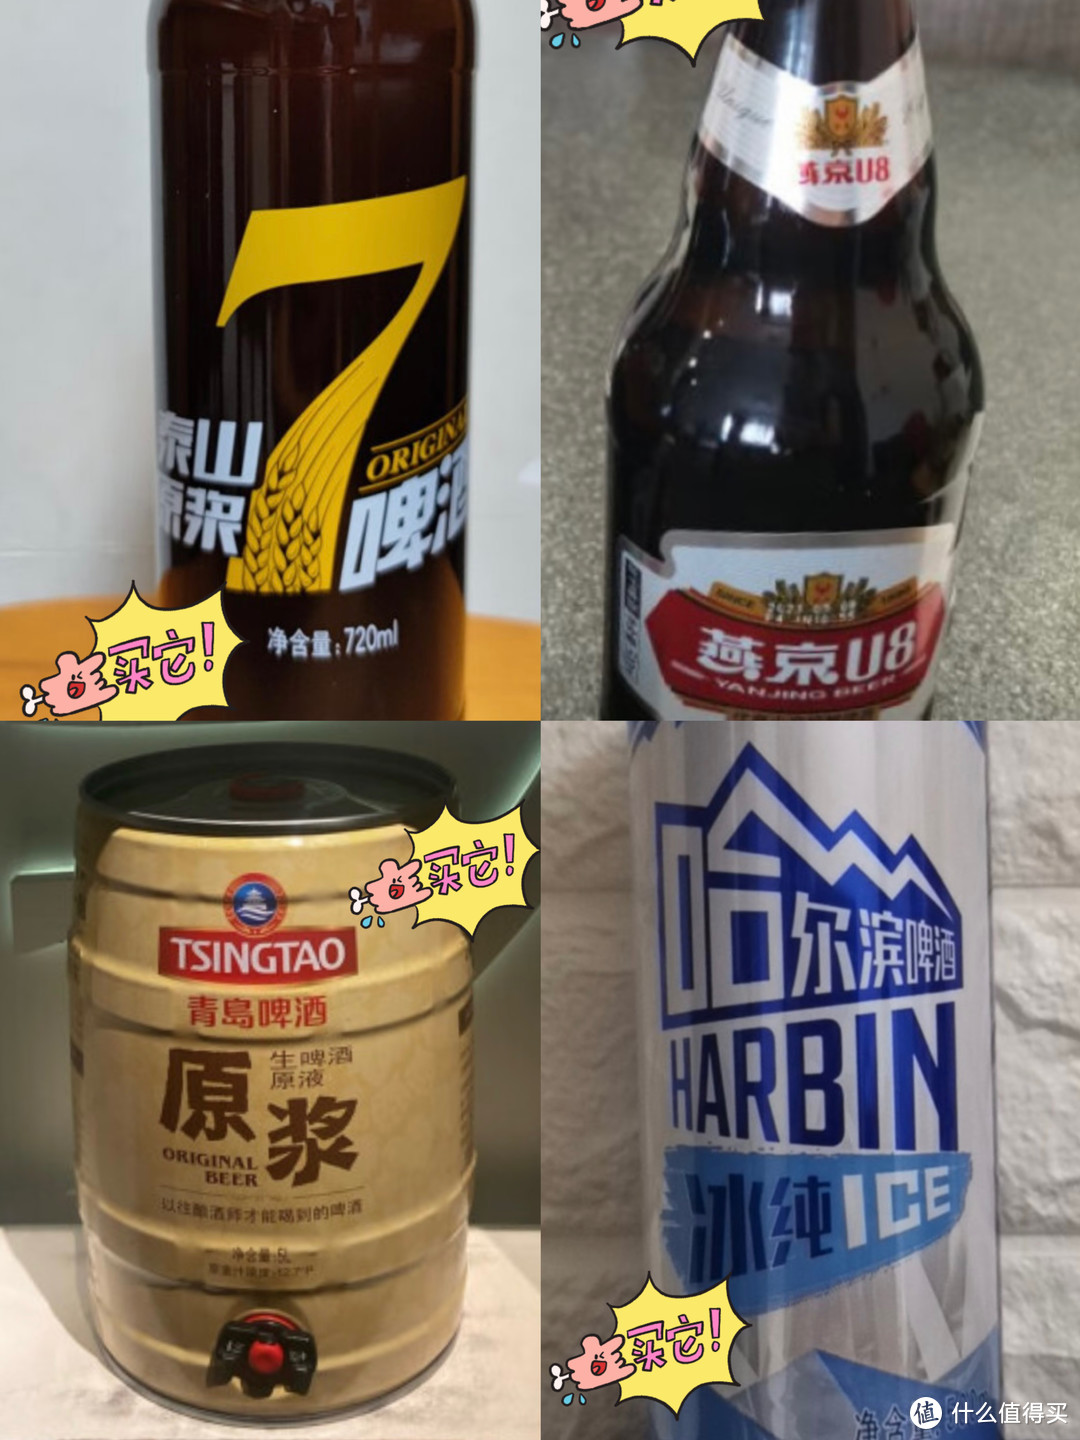 远离工业拉格！这4款国货之光，都是不含“啤酒花制品”的真精酿